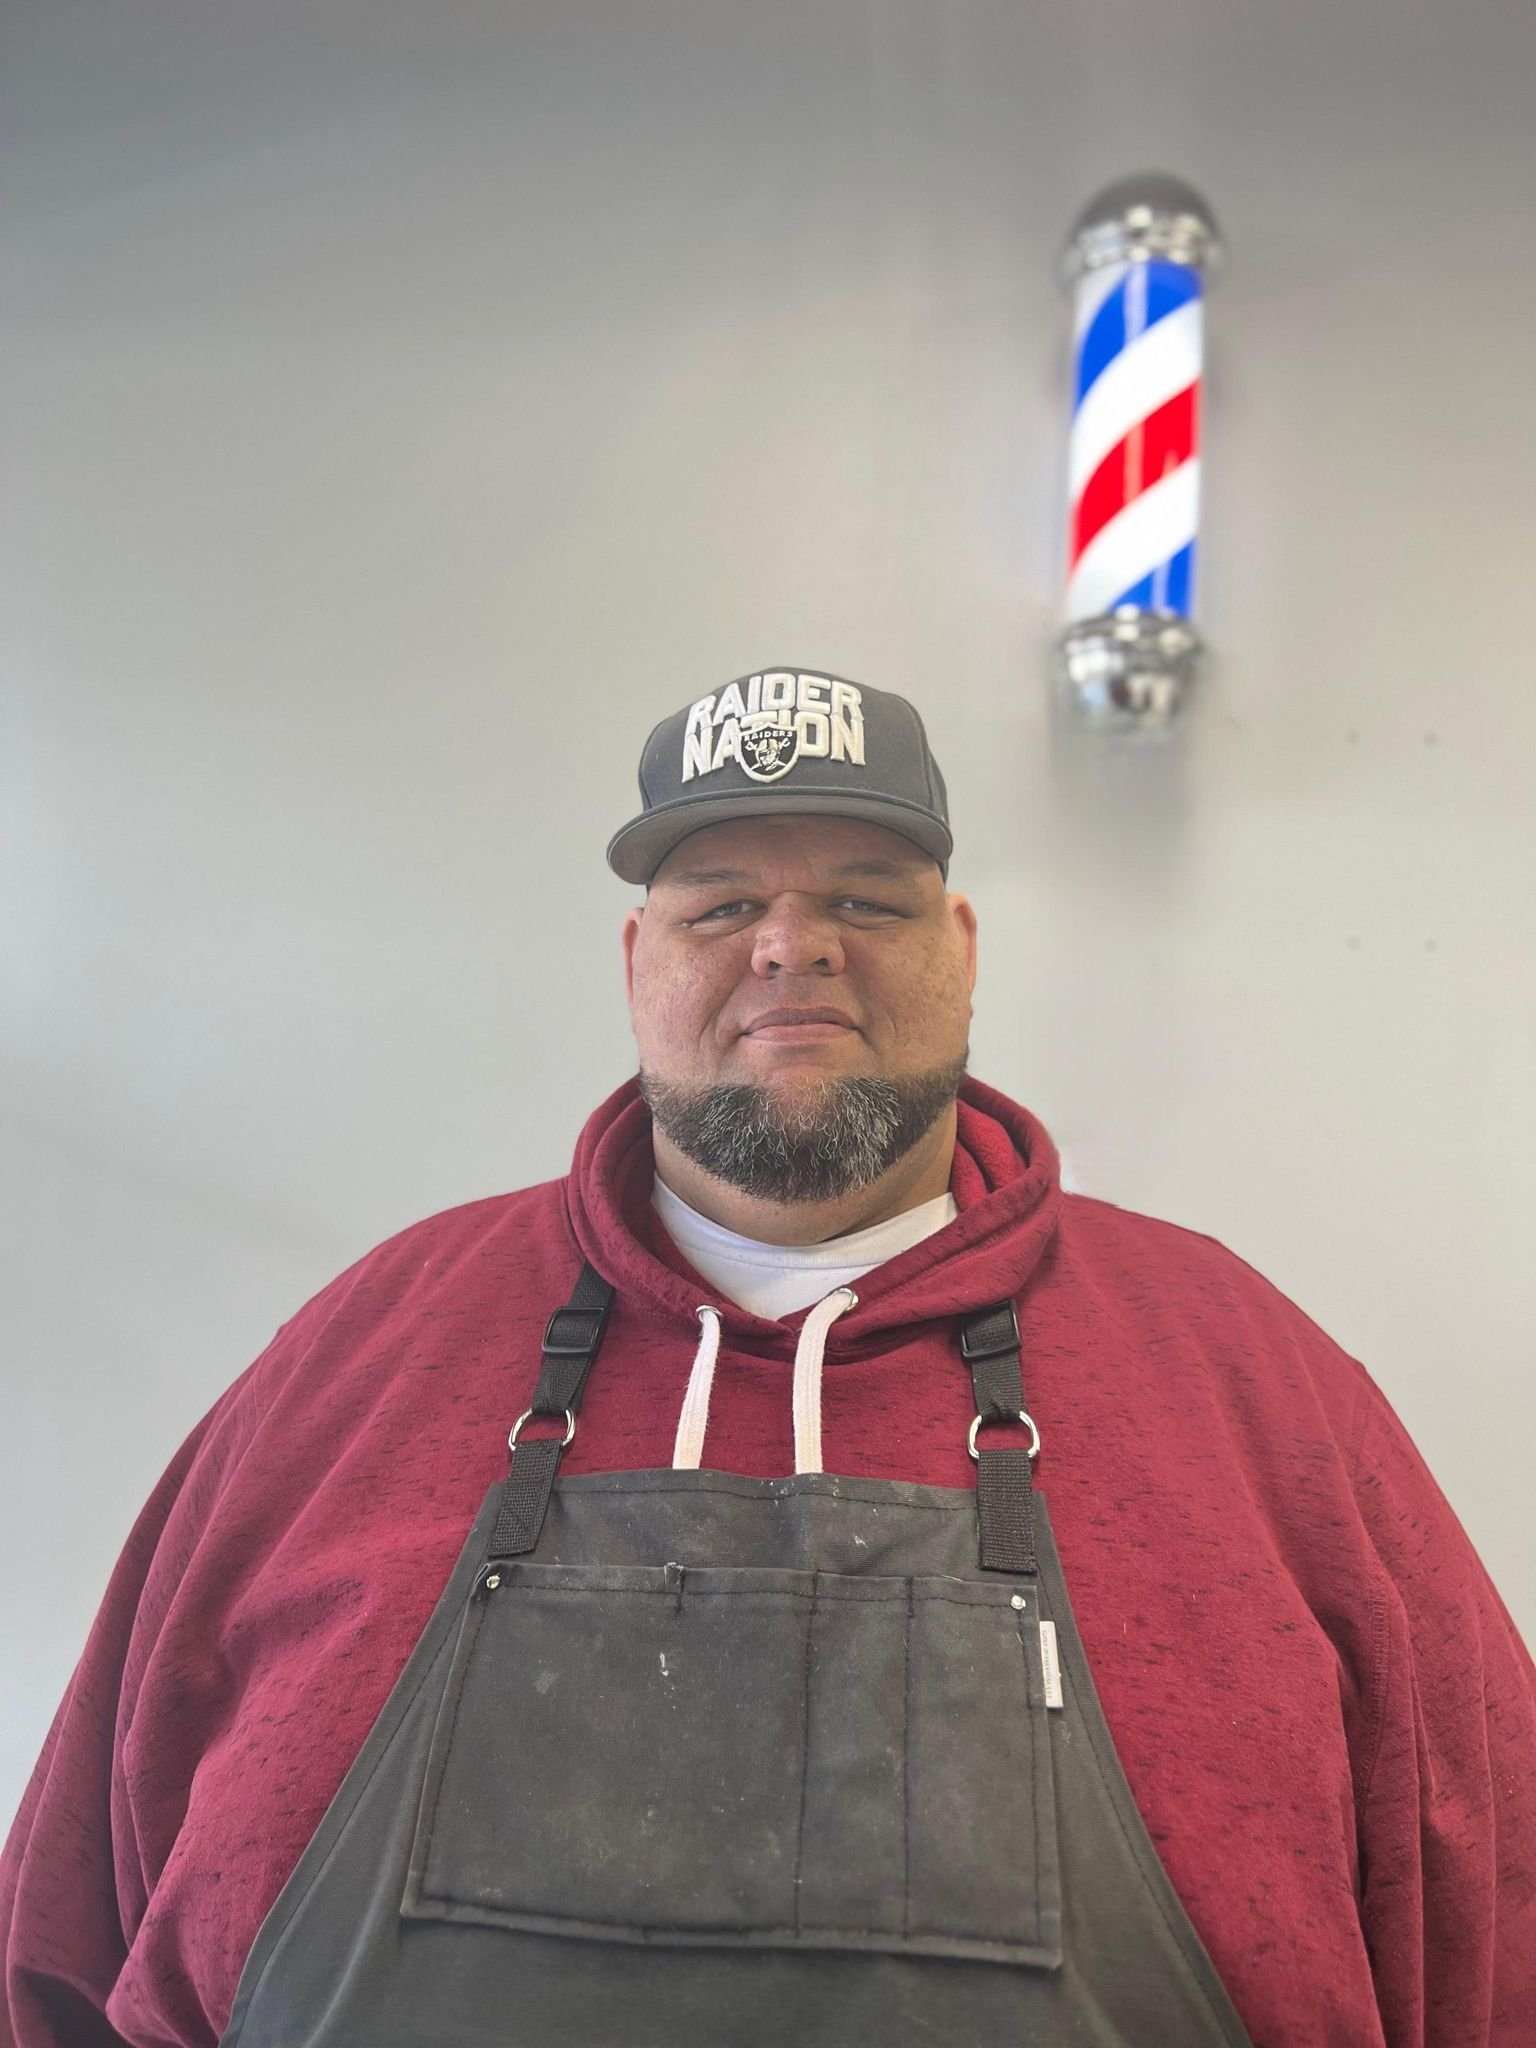 Mani the Barber at Clips and Kicks Barbershop in American Fork Utah